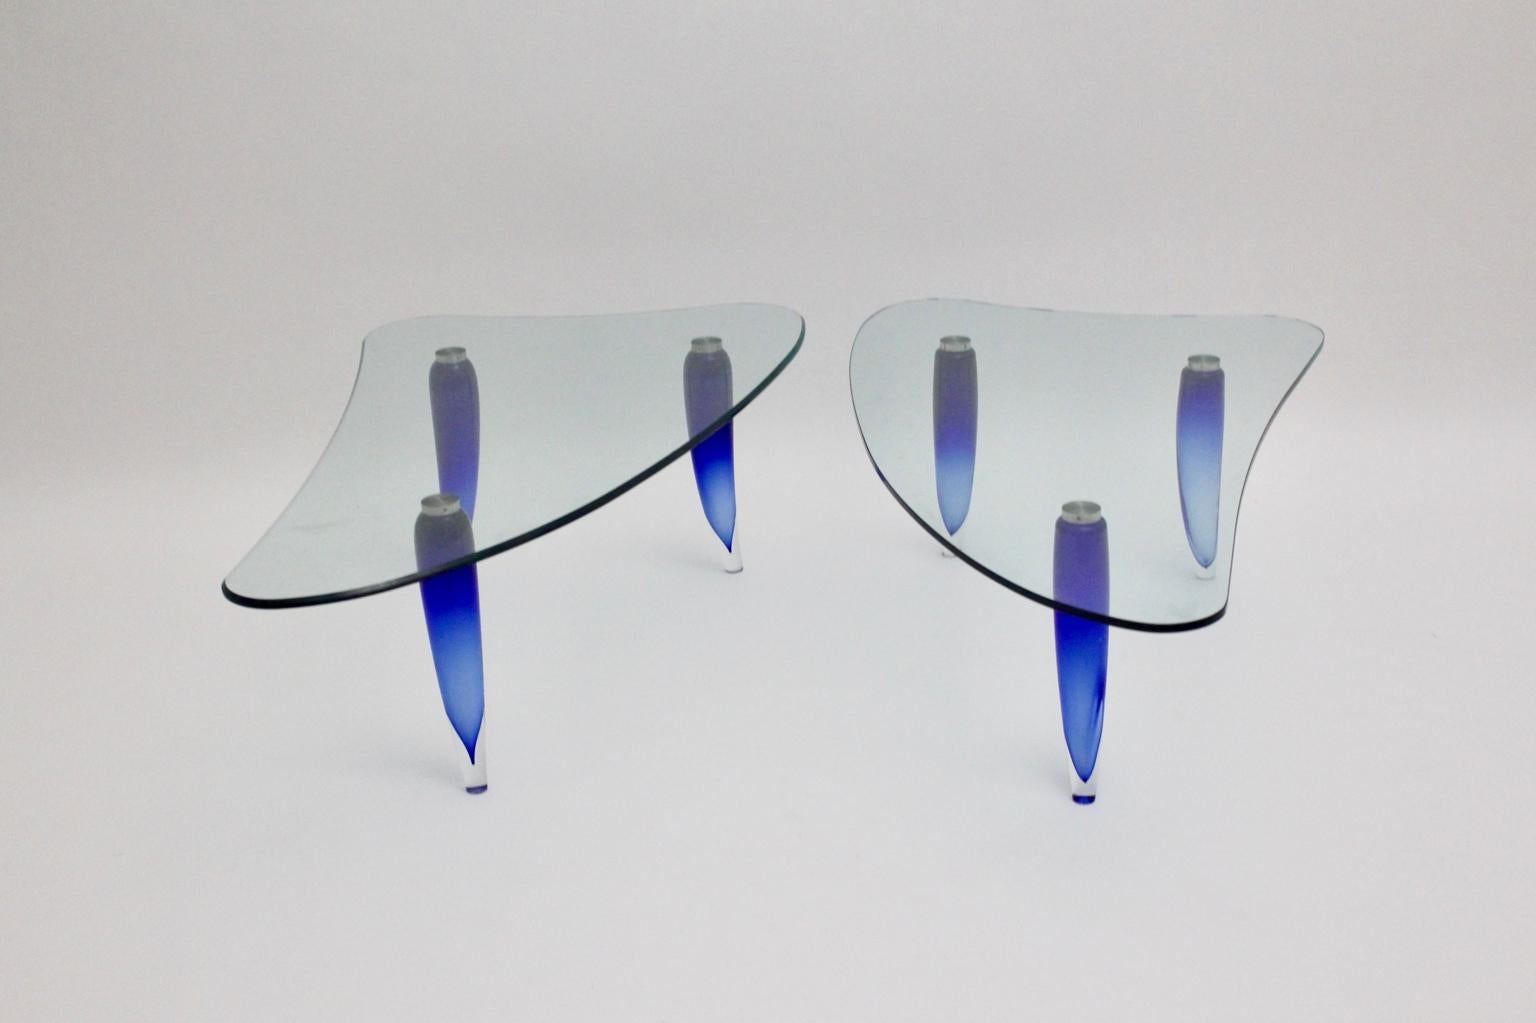 Moderne Couchtische oder Beistelltische aus blauem und klarem Glas von Seguso, Italien, um 1980.
Die Couchtische haben drei aquablaue geschwungene Beine und eine sanft geschwungene Klarglasplatte. Eine der Tabellen zeigt auch eine Facette. 
Die